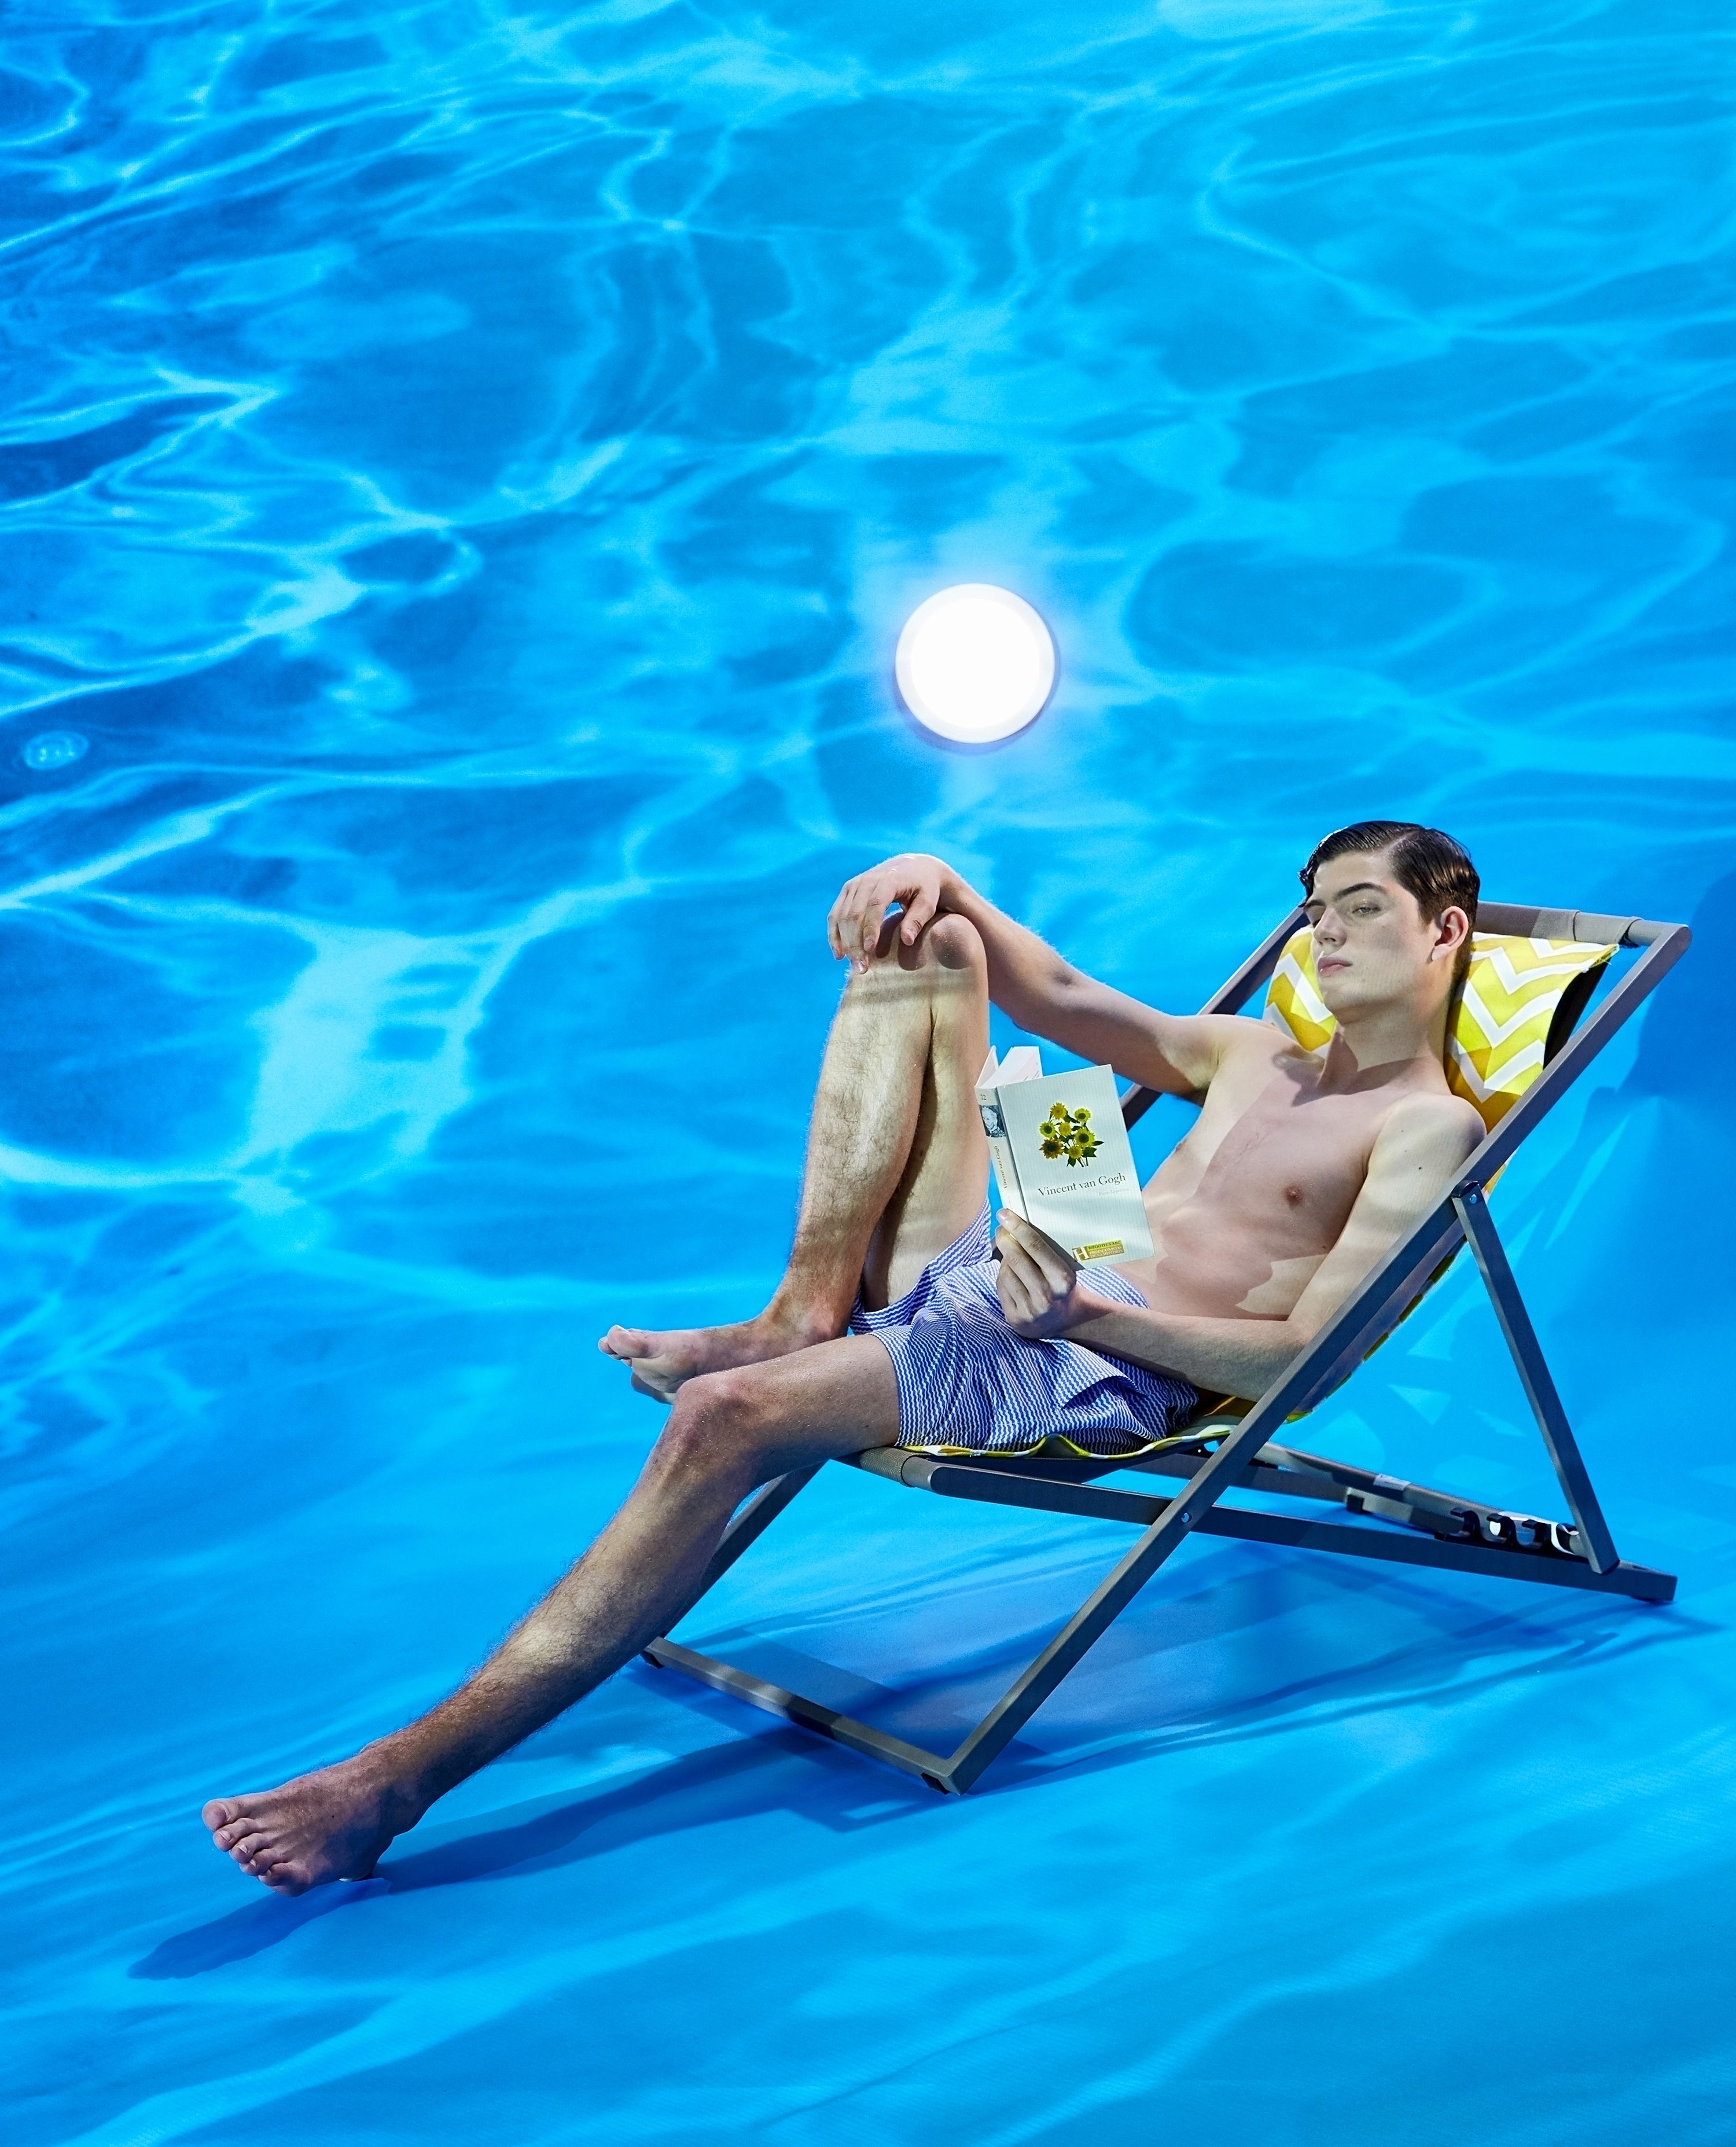 Esquire presenta: La ropa de hombre imprescindible para ir a la piscina